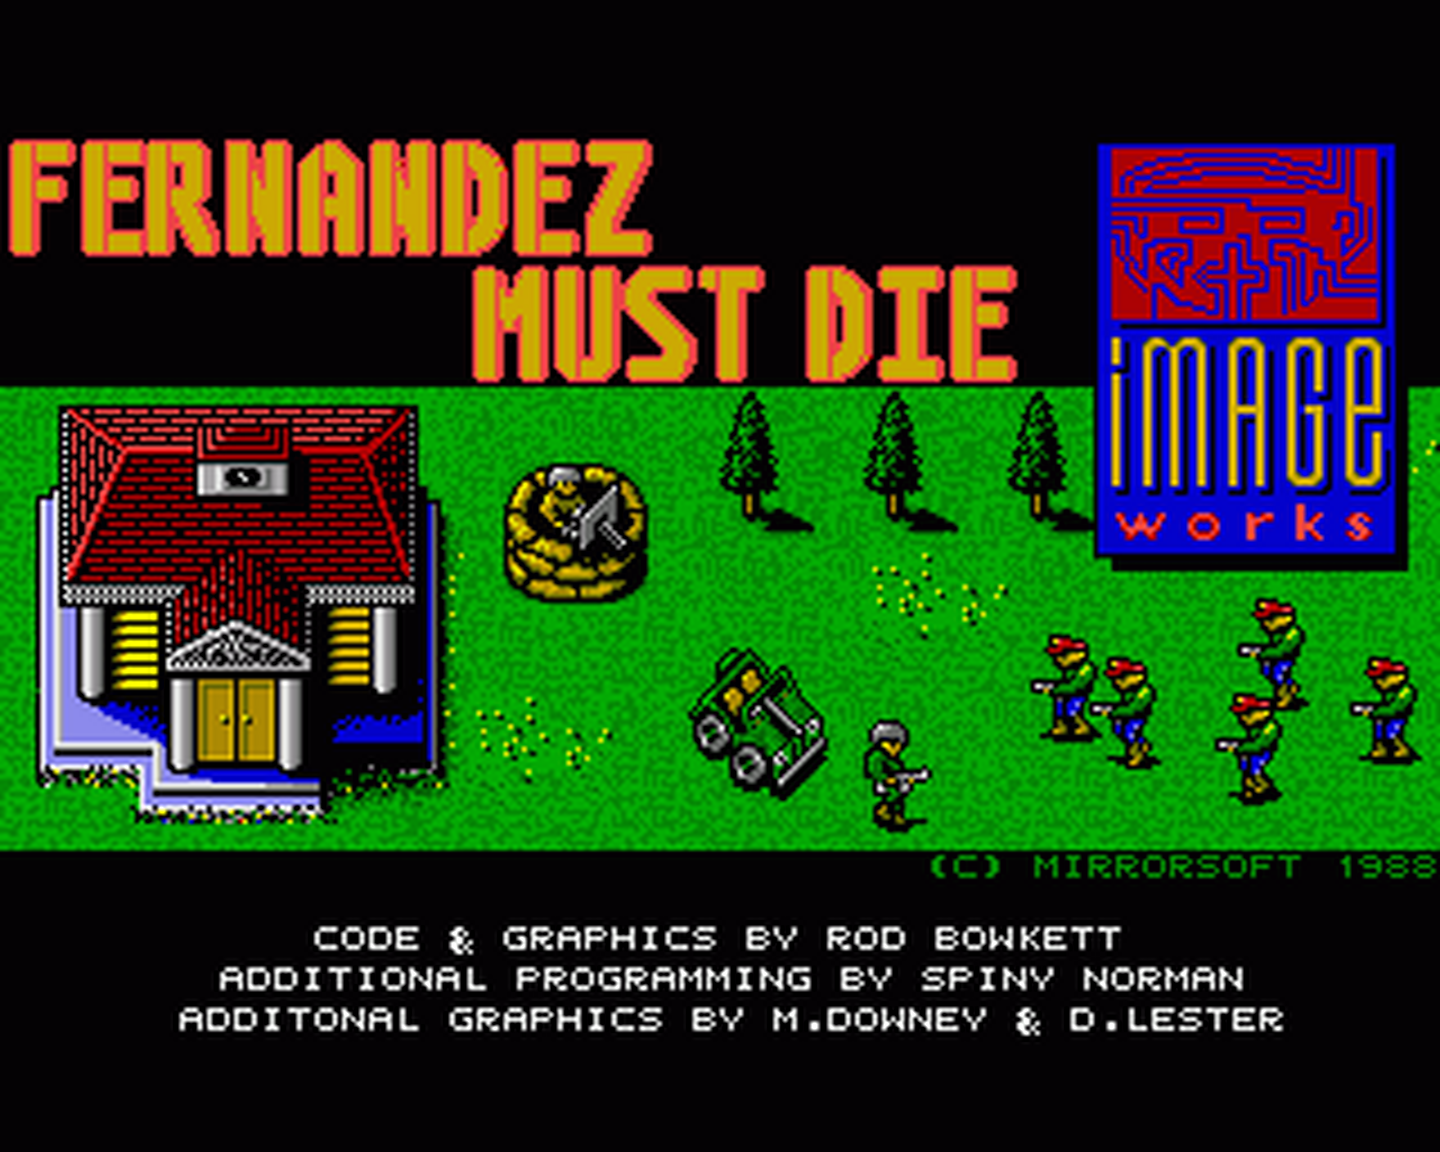 Amiga GameBase Fernandez_Must_Die Image_Works 1988